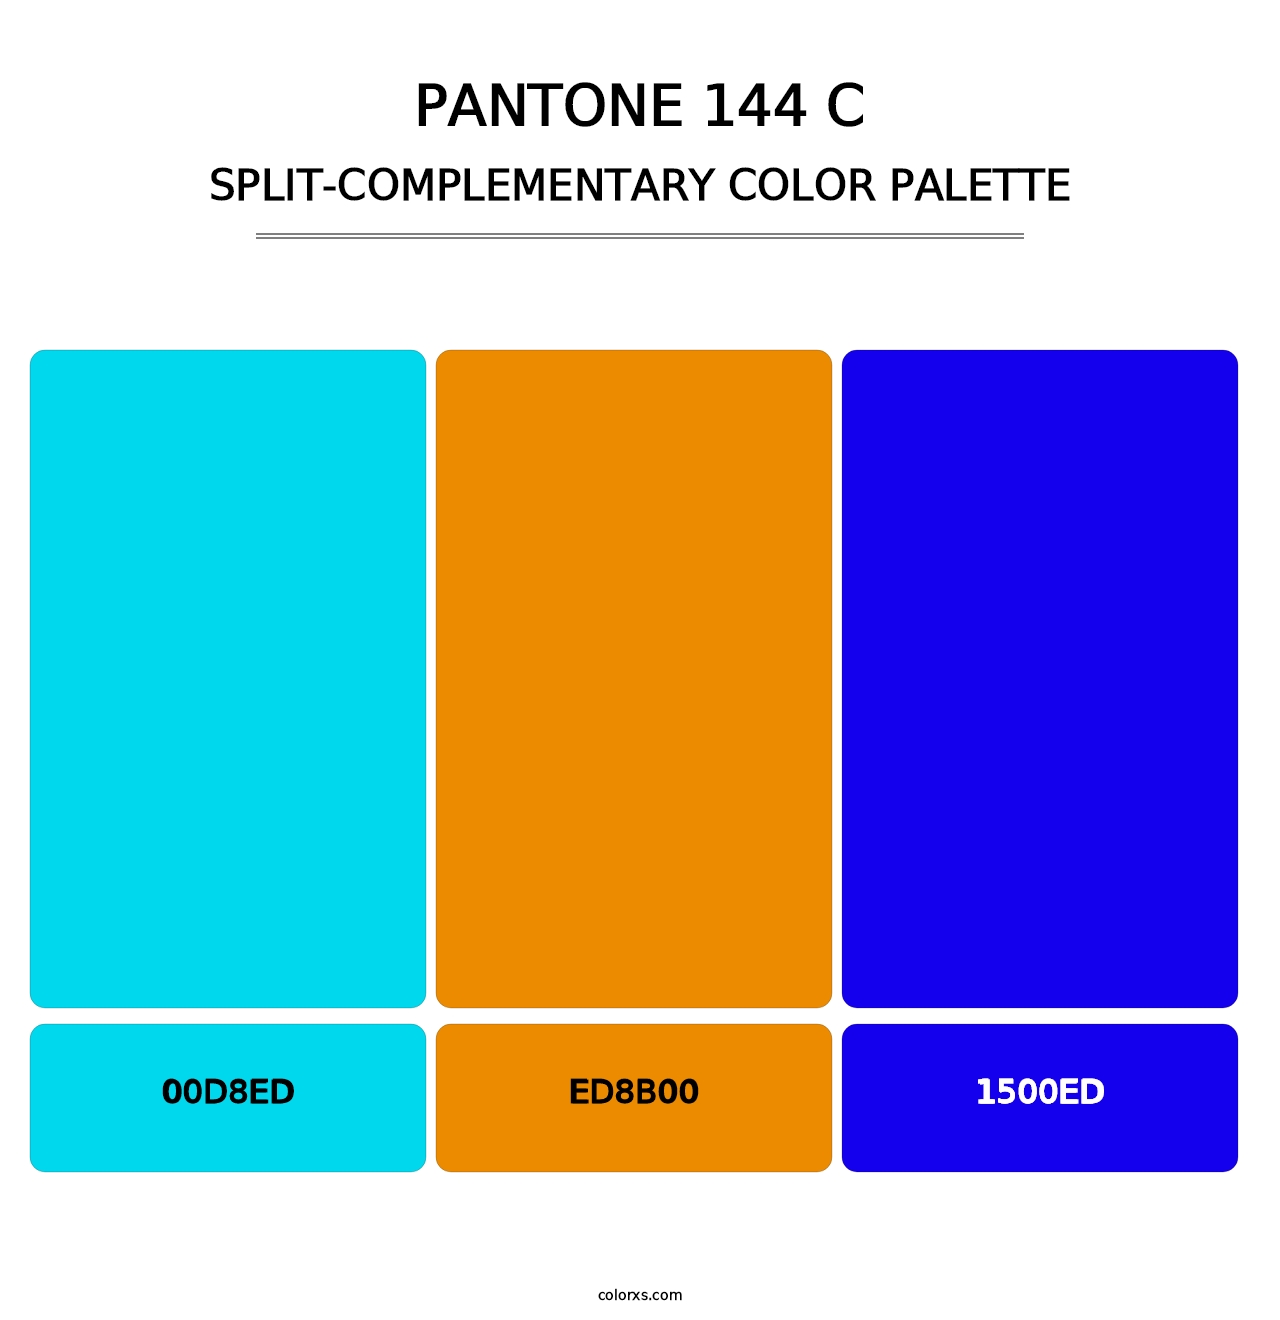 PANTONE 144 C - Split-Complementary Color Palette